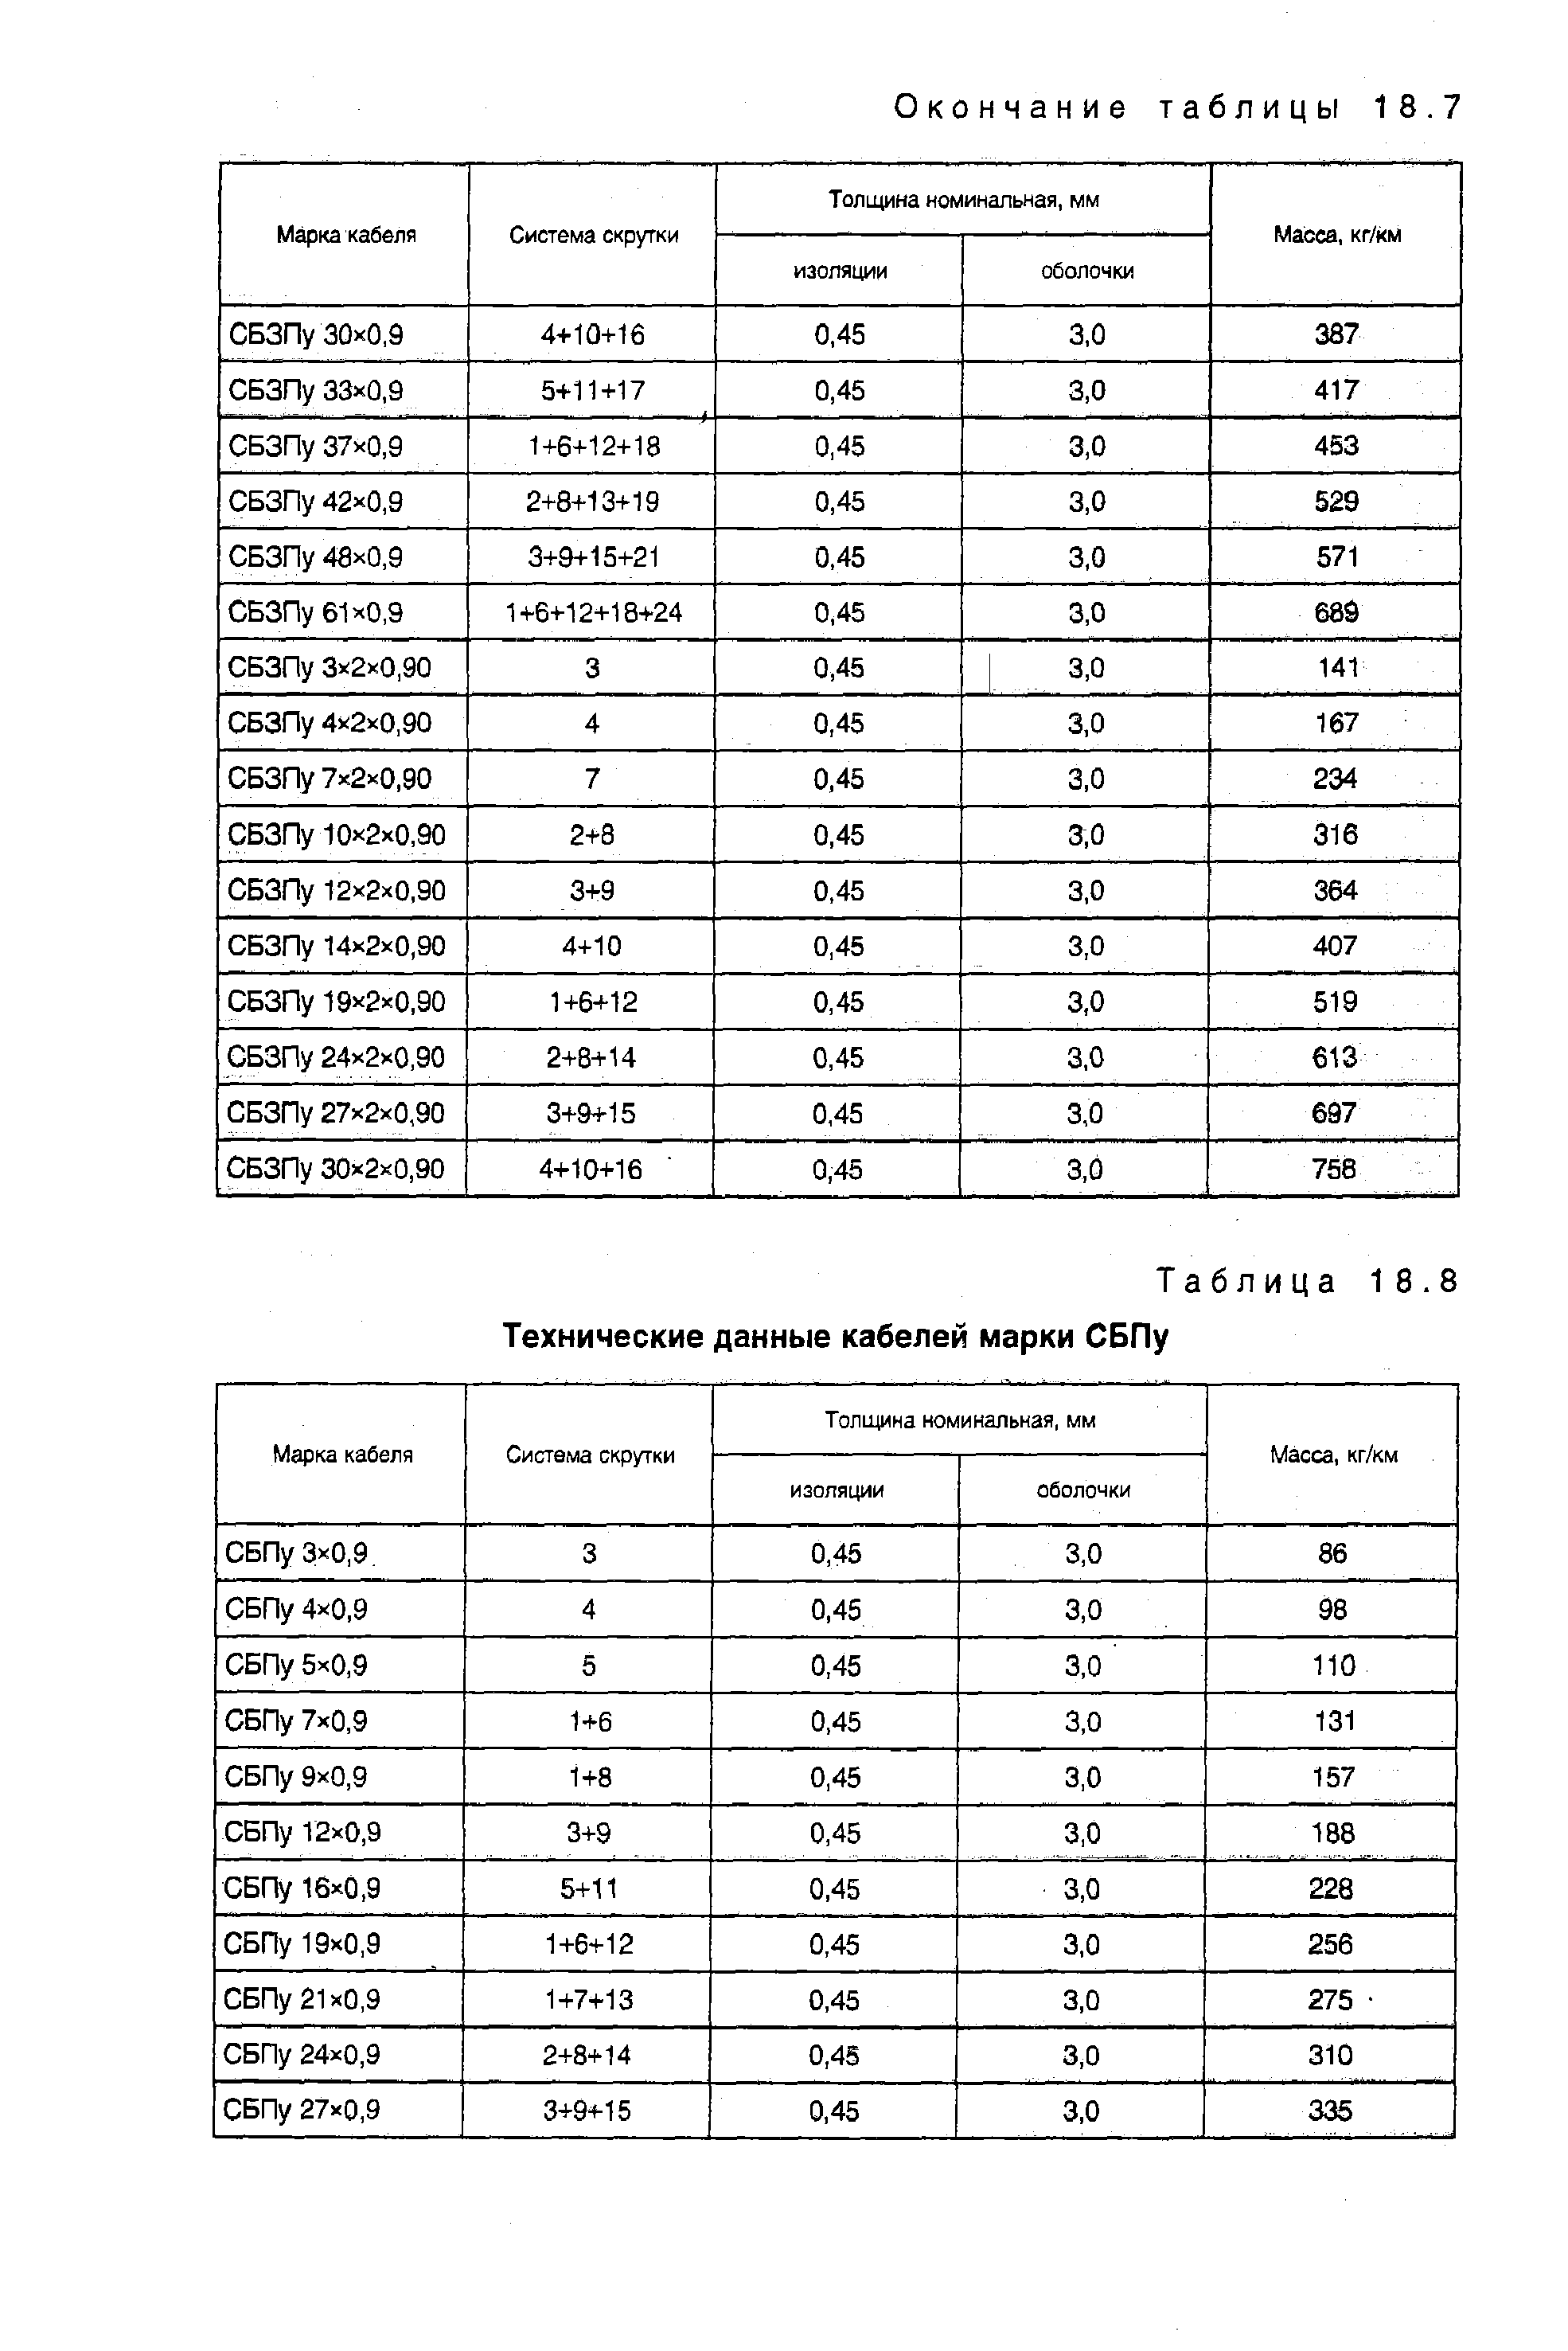 Таблица 18.8 Технические данные кабелей марки СБПу
